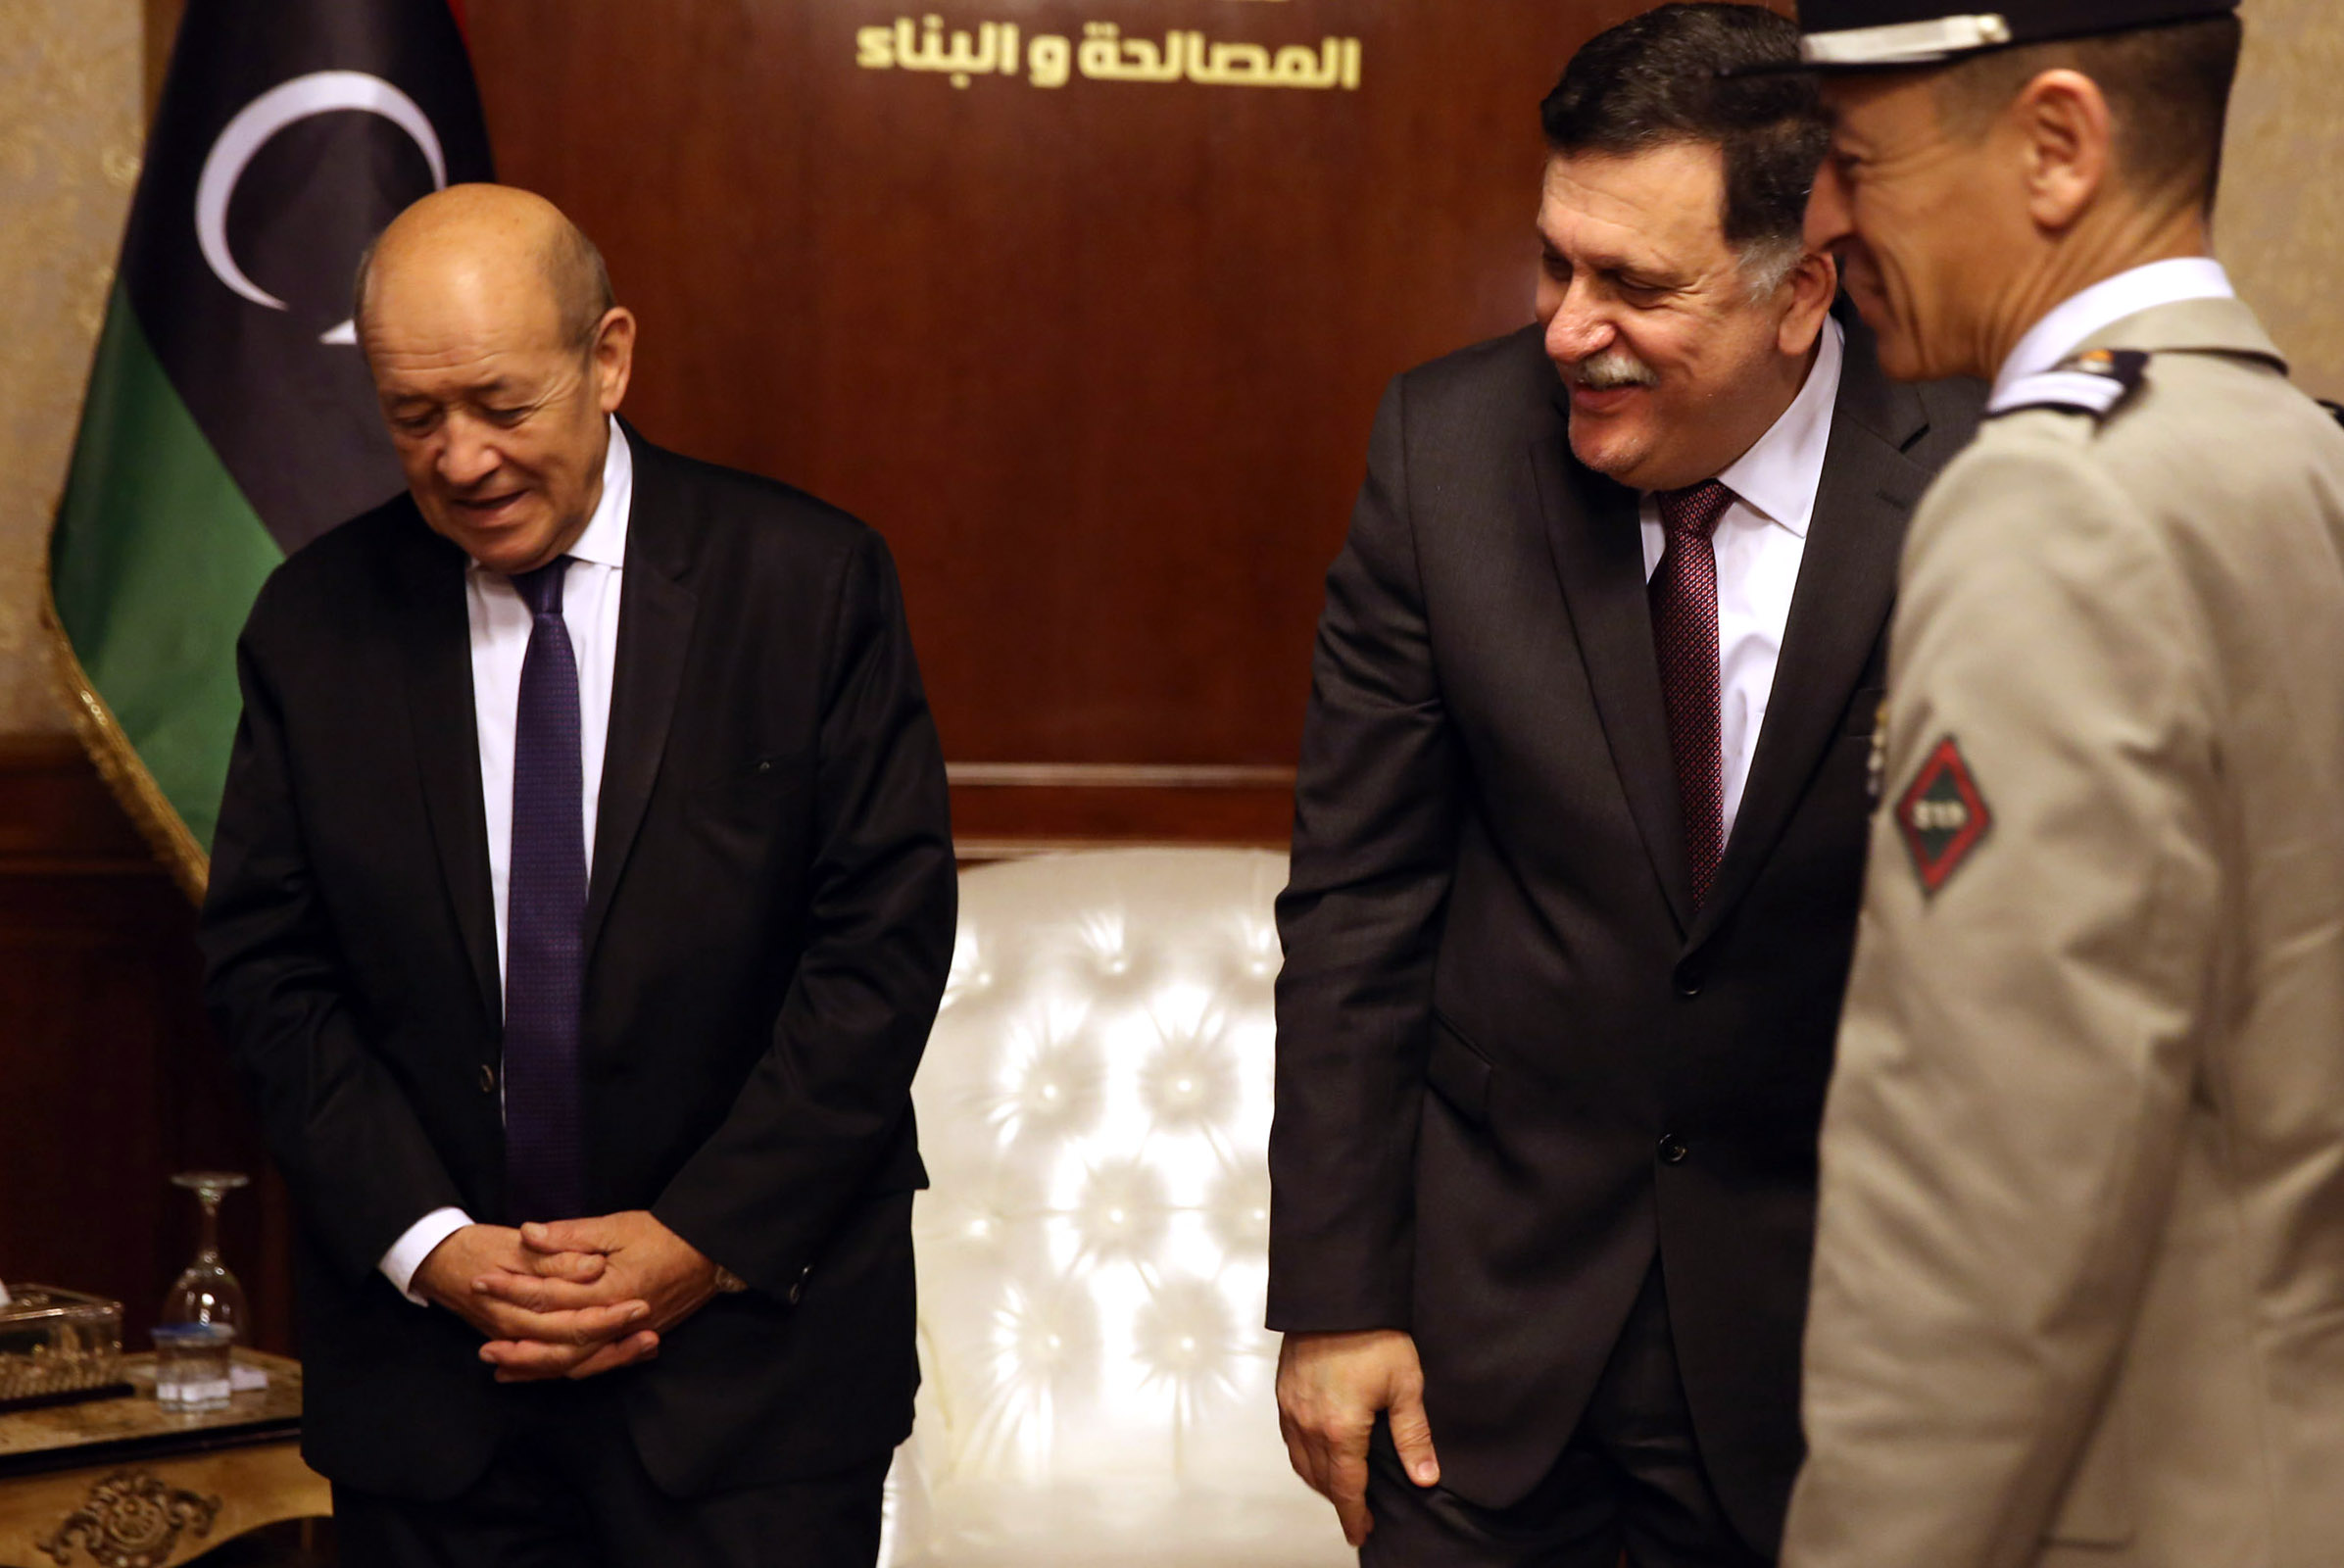 وزير الخارجية الفرنسى جان إيف لودريان بجوار السراج فى ليبيا